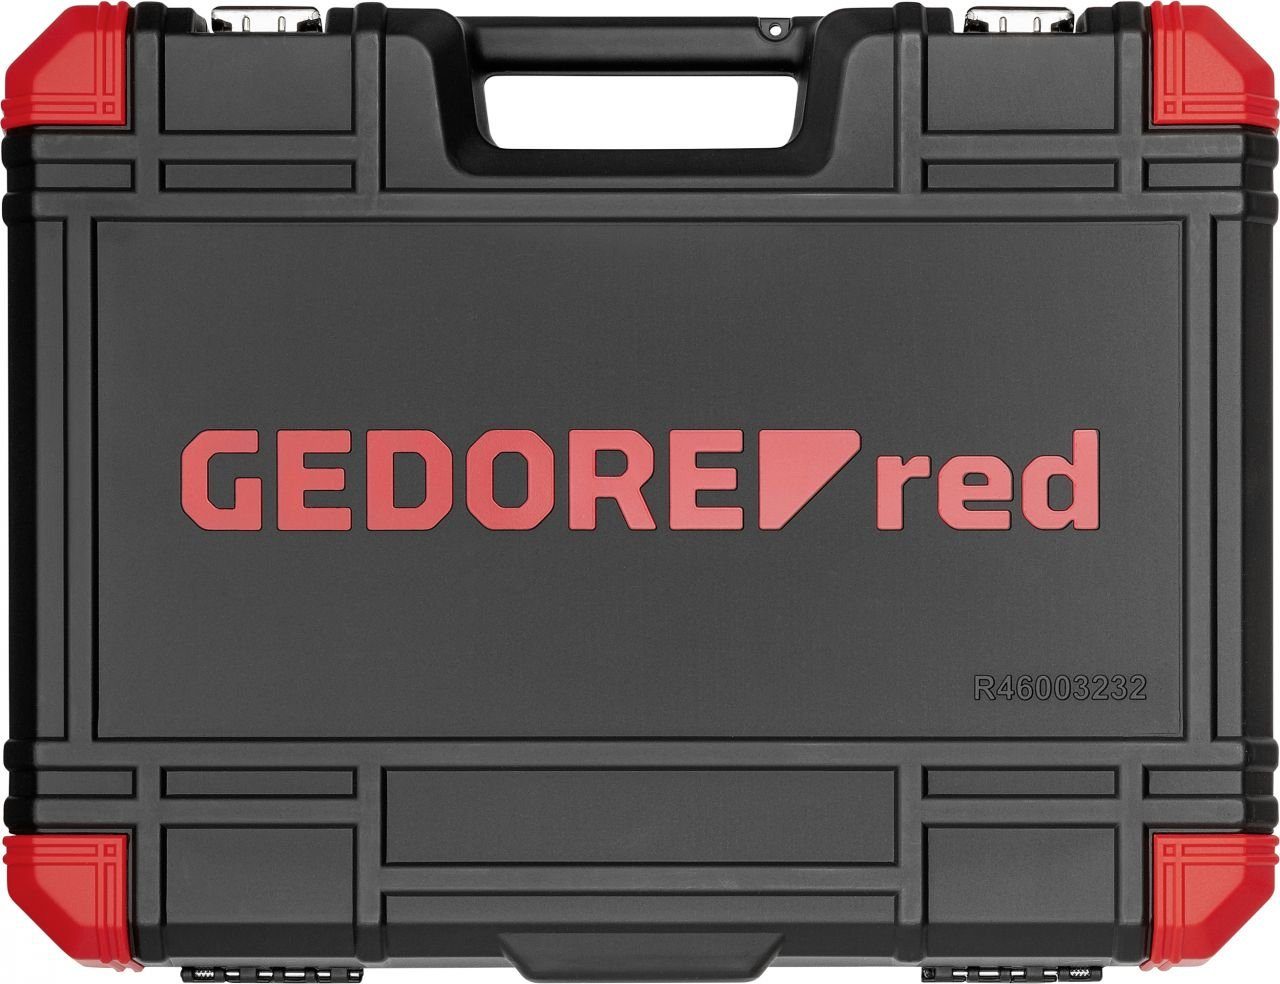 All-IN Red 1/4 Steckschlüssel Steckschlüsselsatz Gedore Gedore Red R46003232